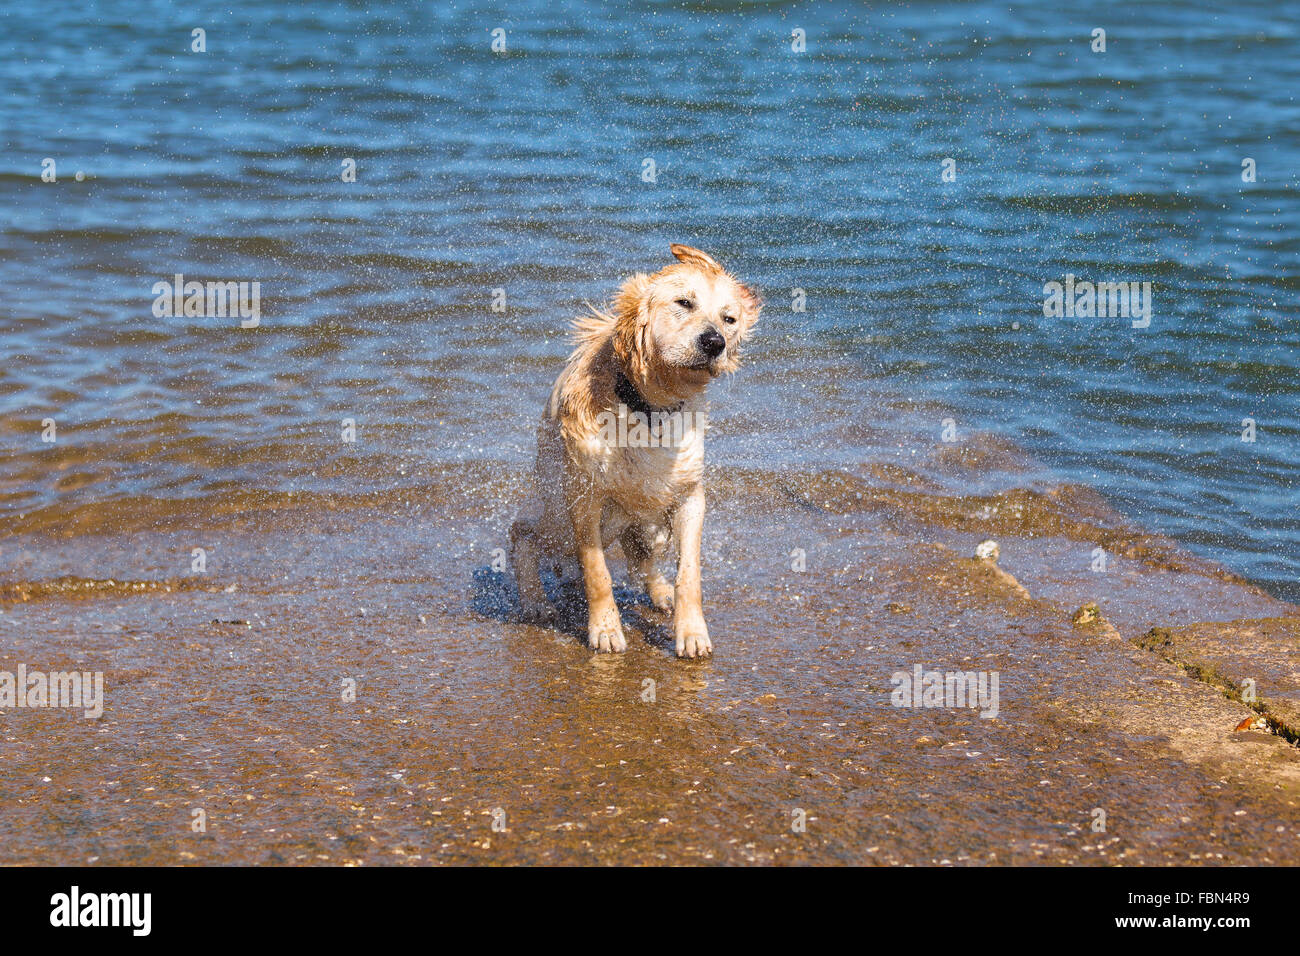 A golden retriever dog in the water. Punta Parayas, Maliaño, Camargo, Cantabria, Spain. Stock Photo